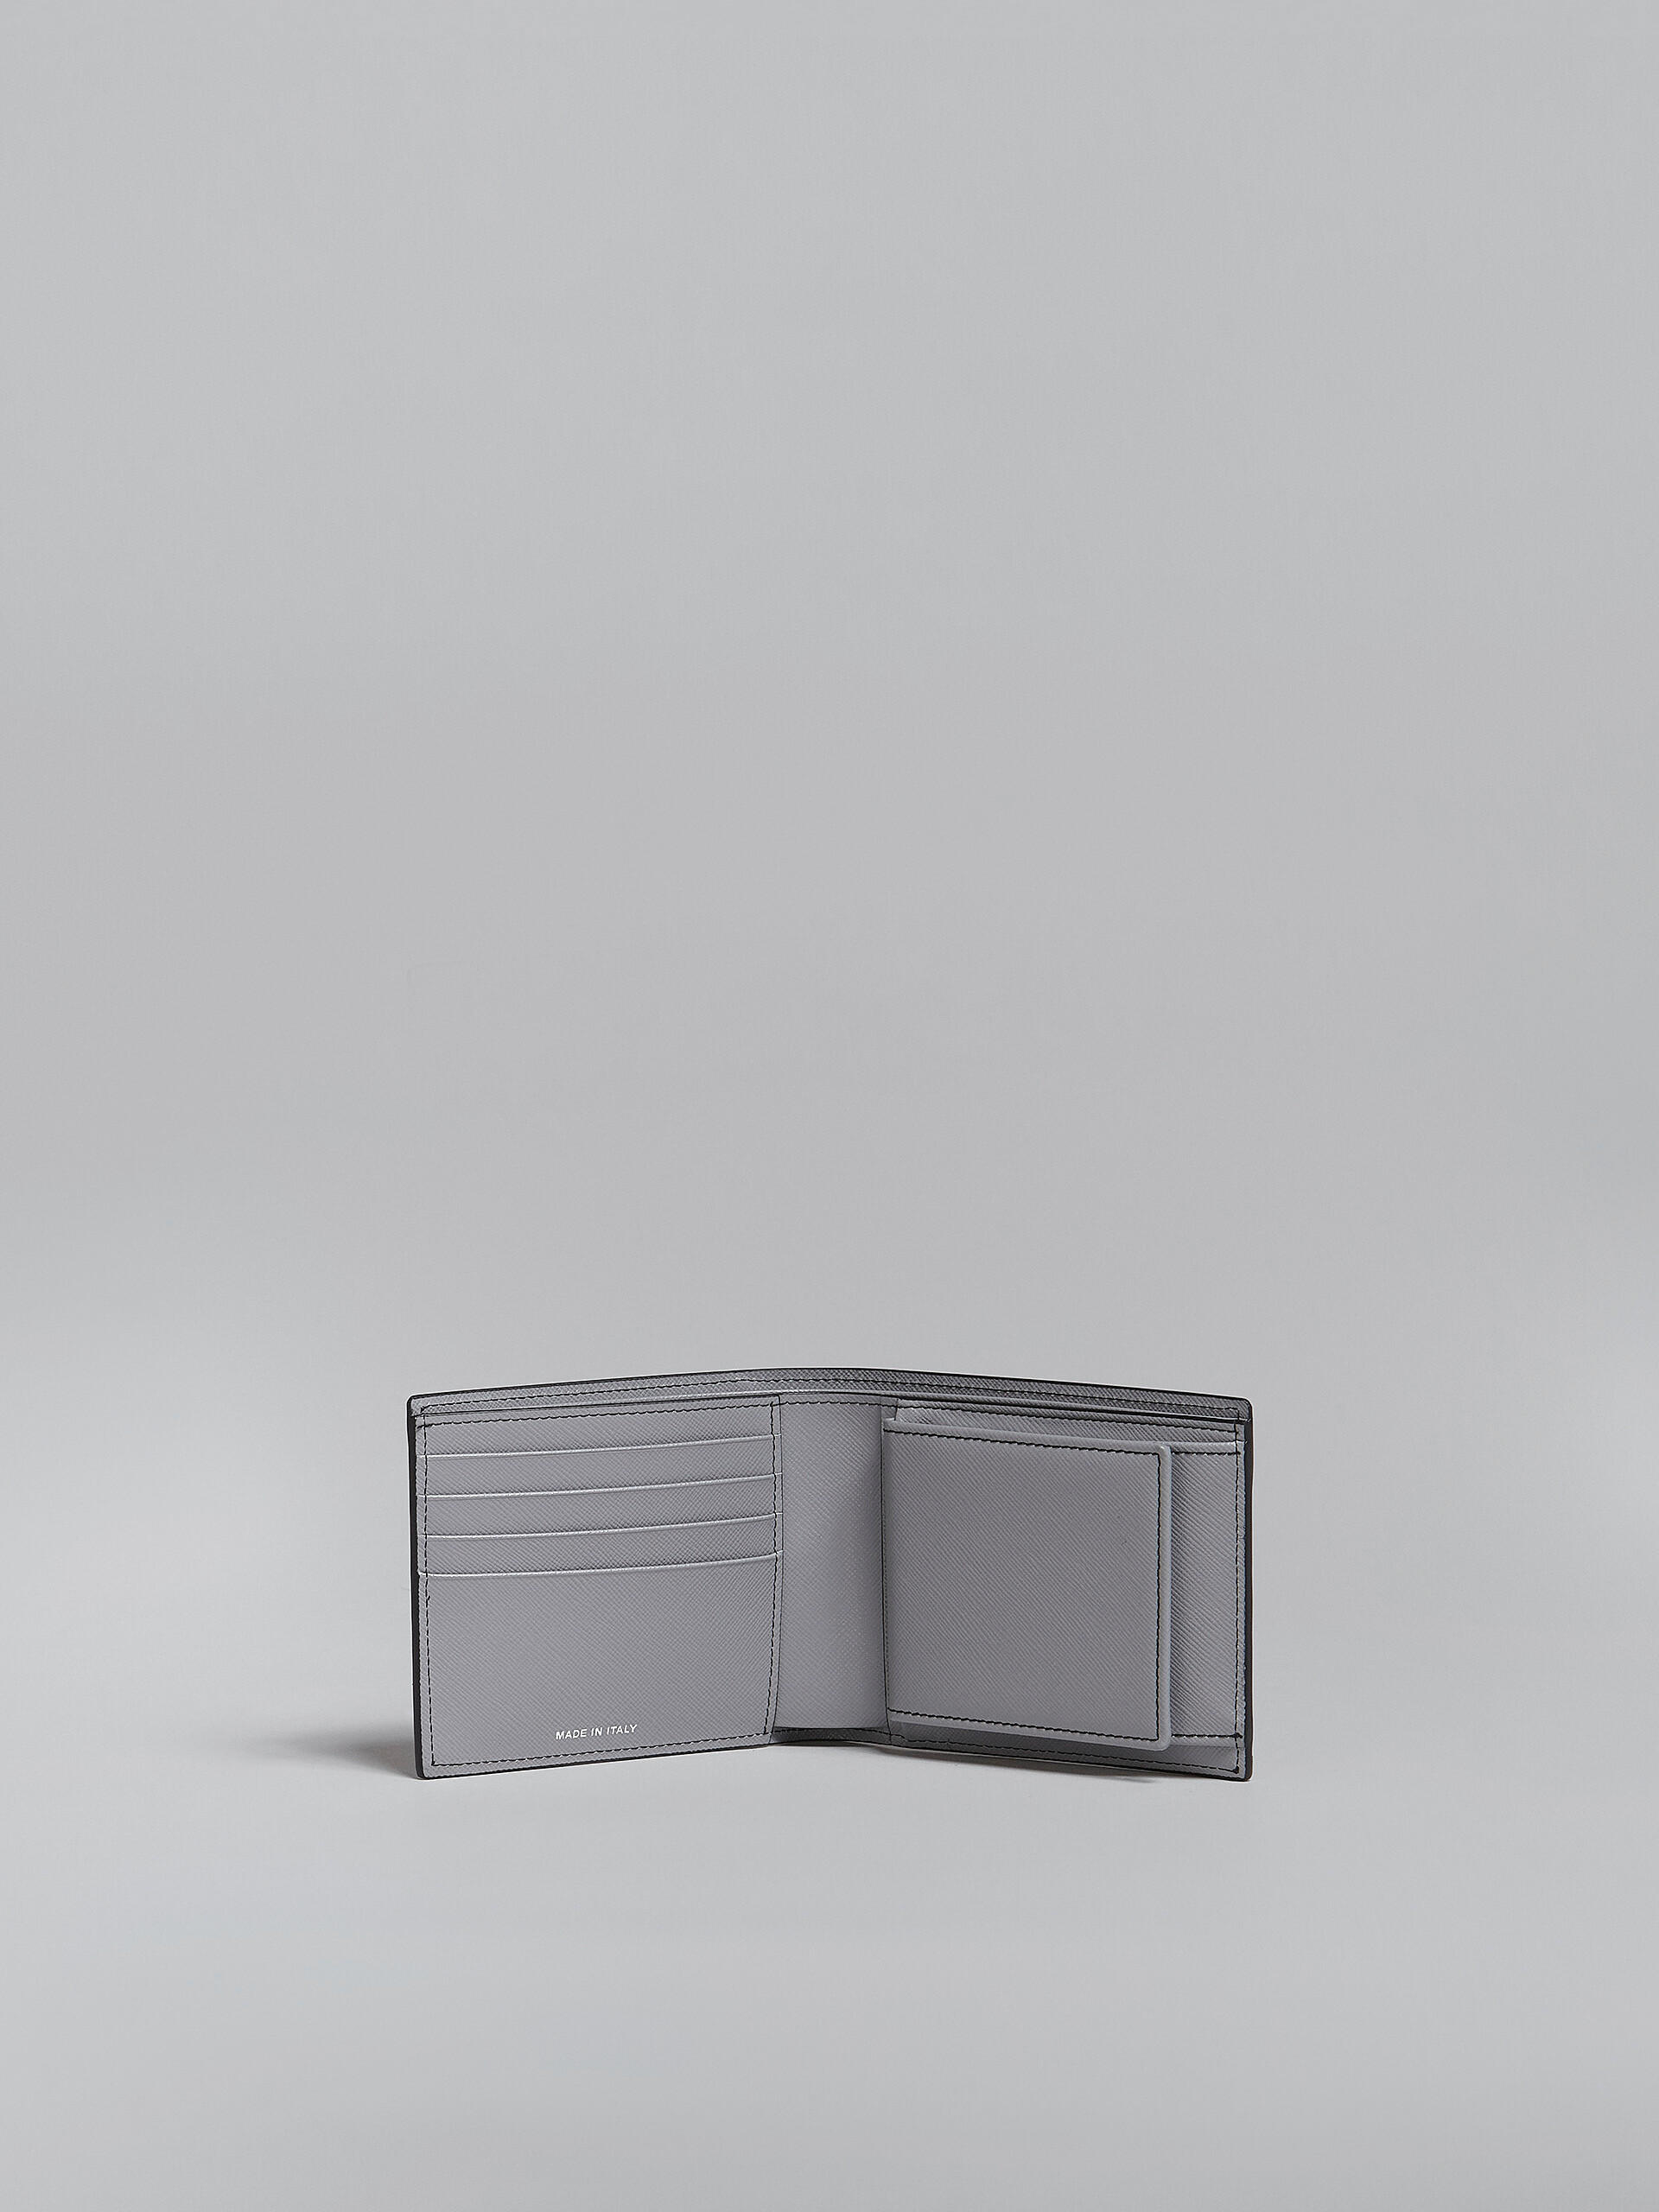 Zweifache Faltbrieftasche aus Saffiano-Leder in Grau und Blau - Brieftaschen - Image 2